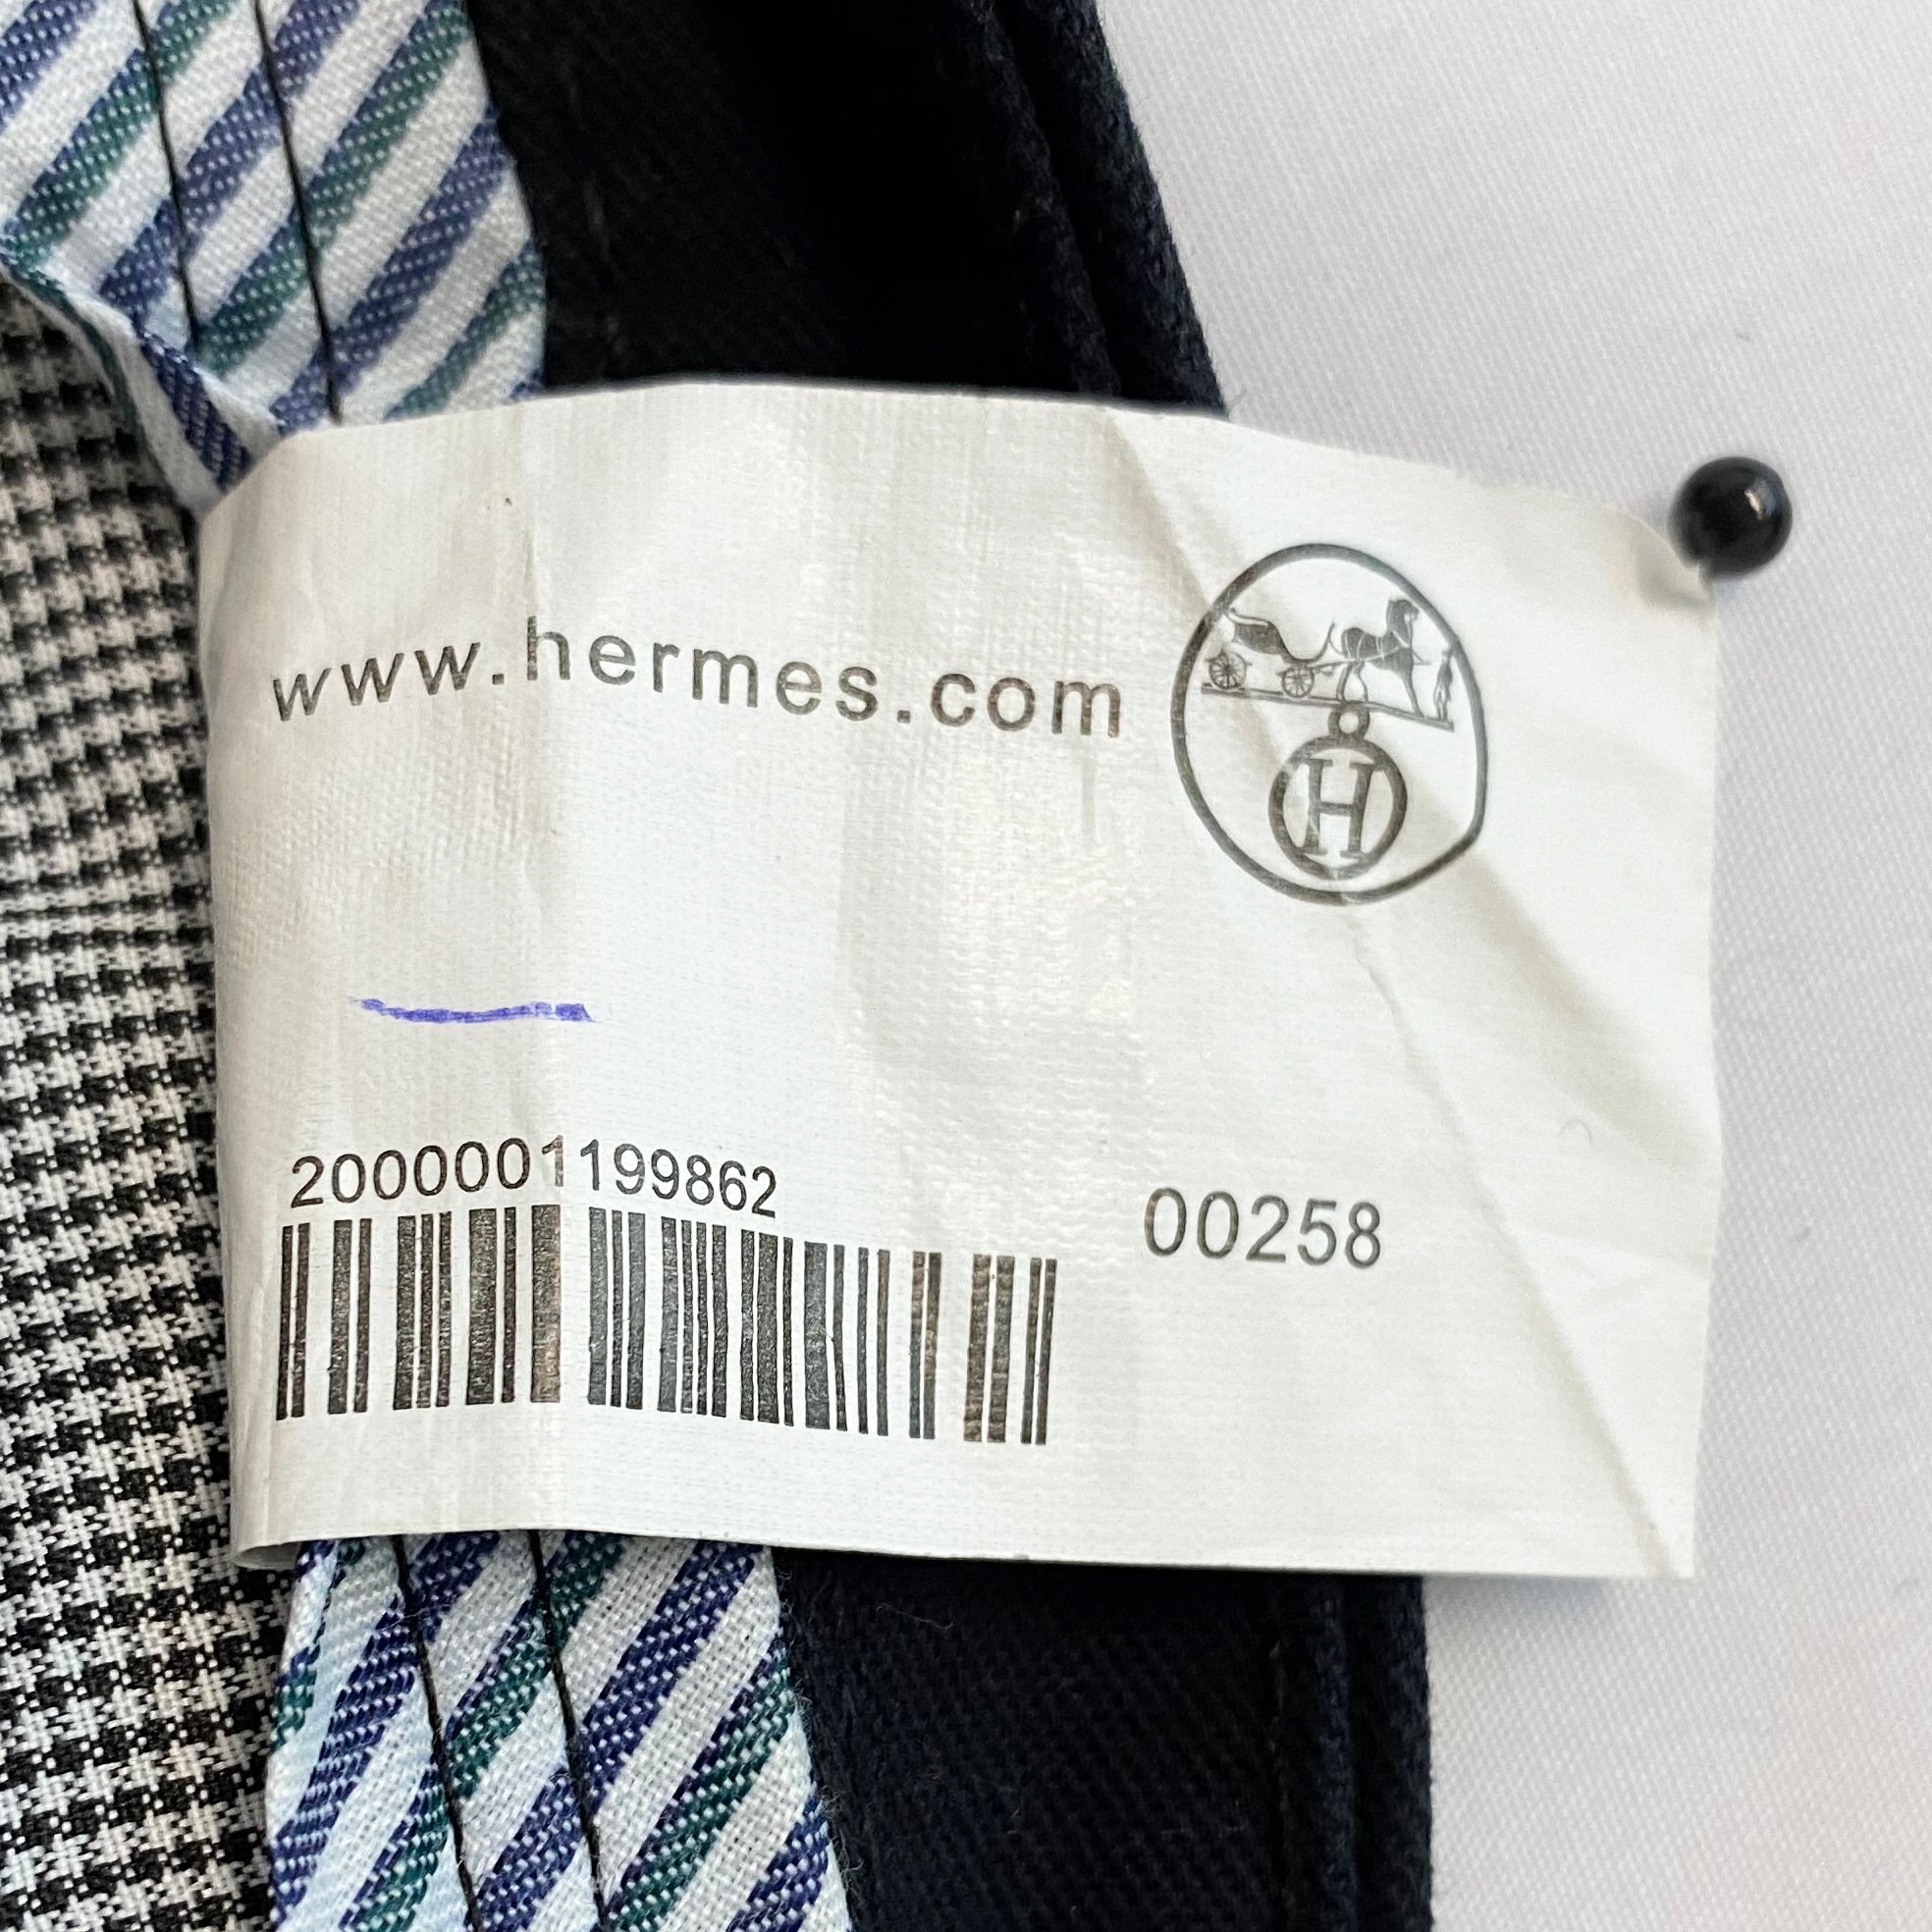 Hermes Paris Men's Black Trousers